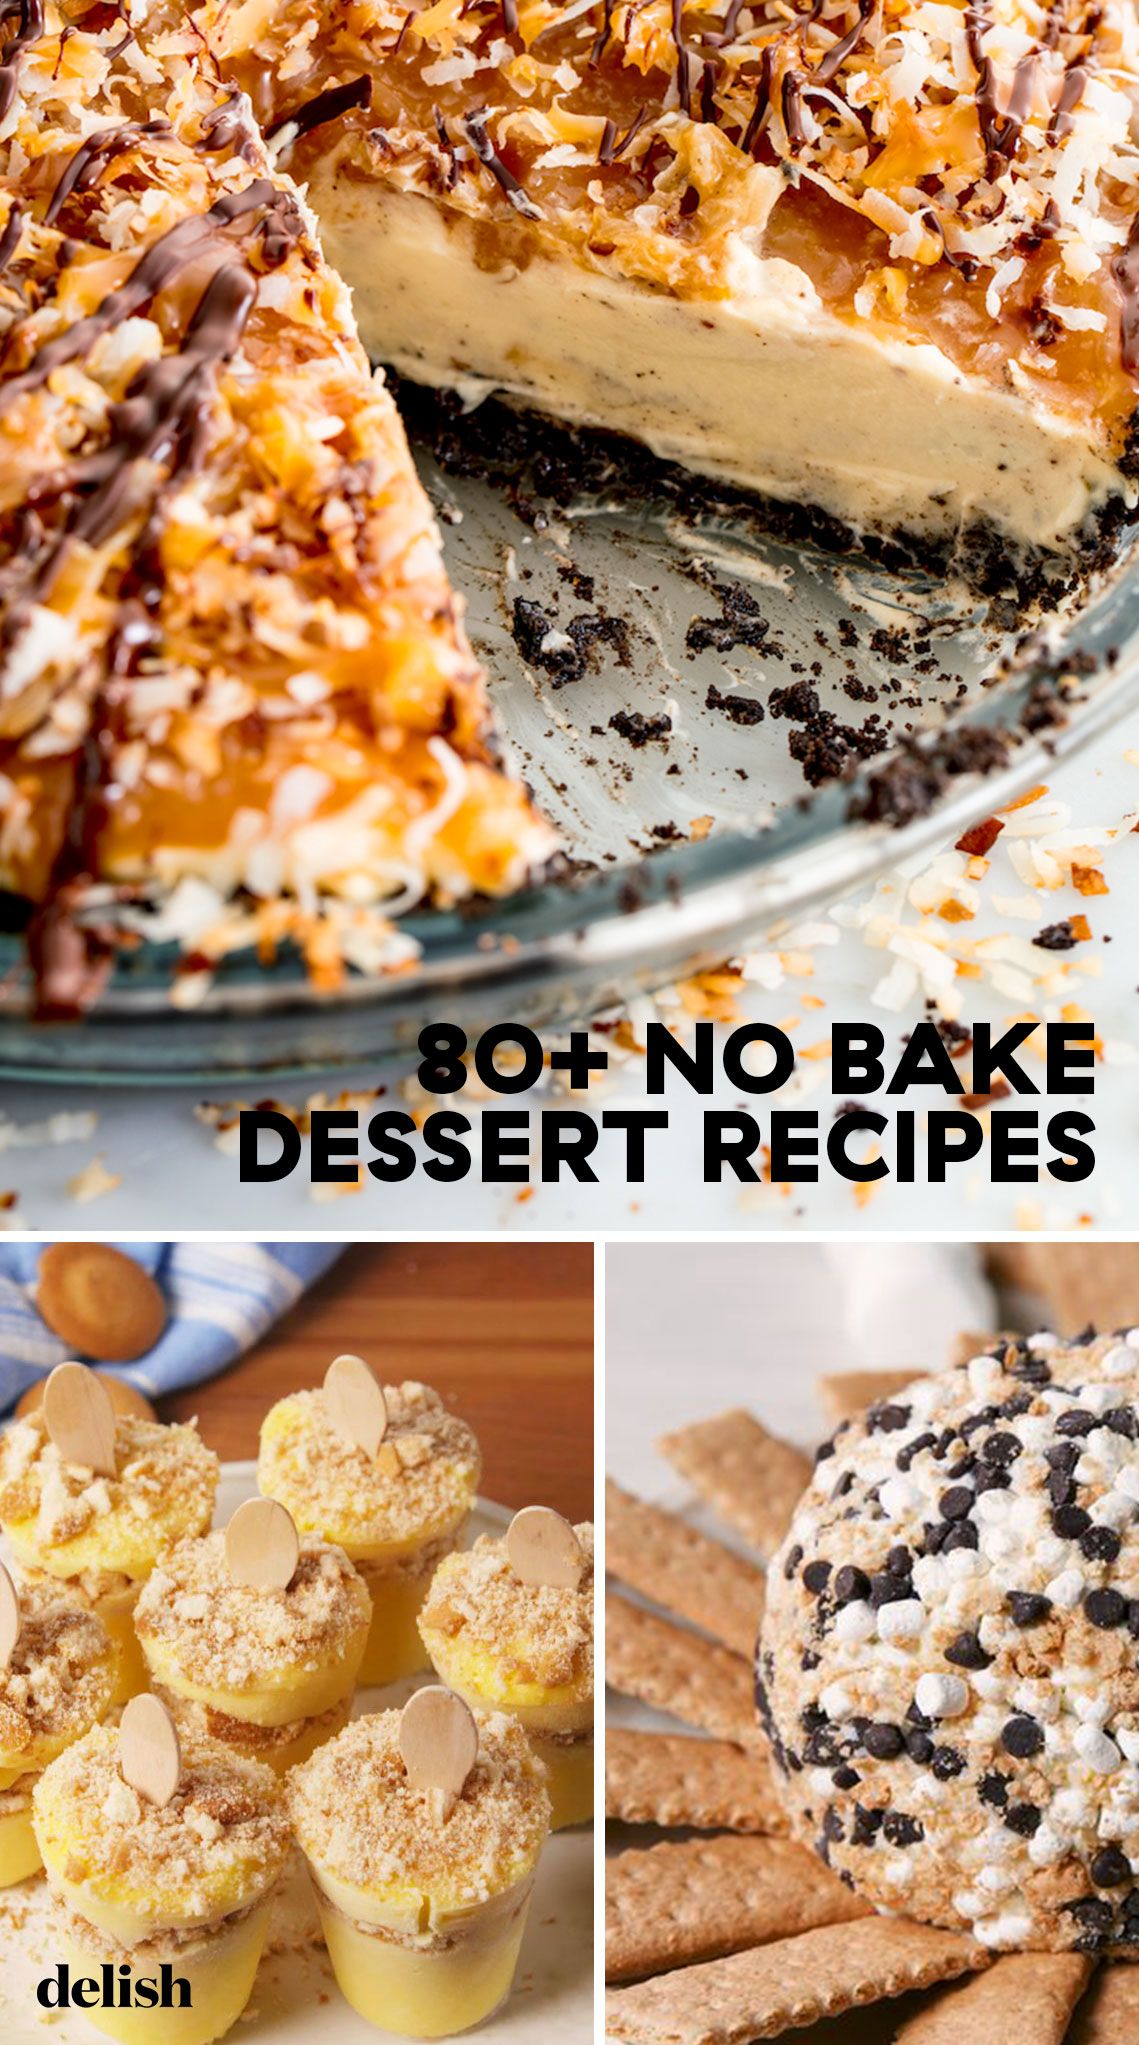 Steps To Prepare Simple Dessert Recipes No Bake